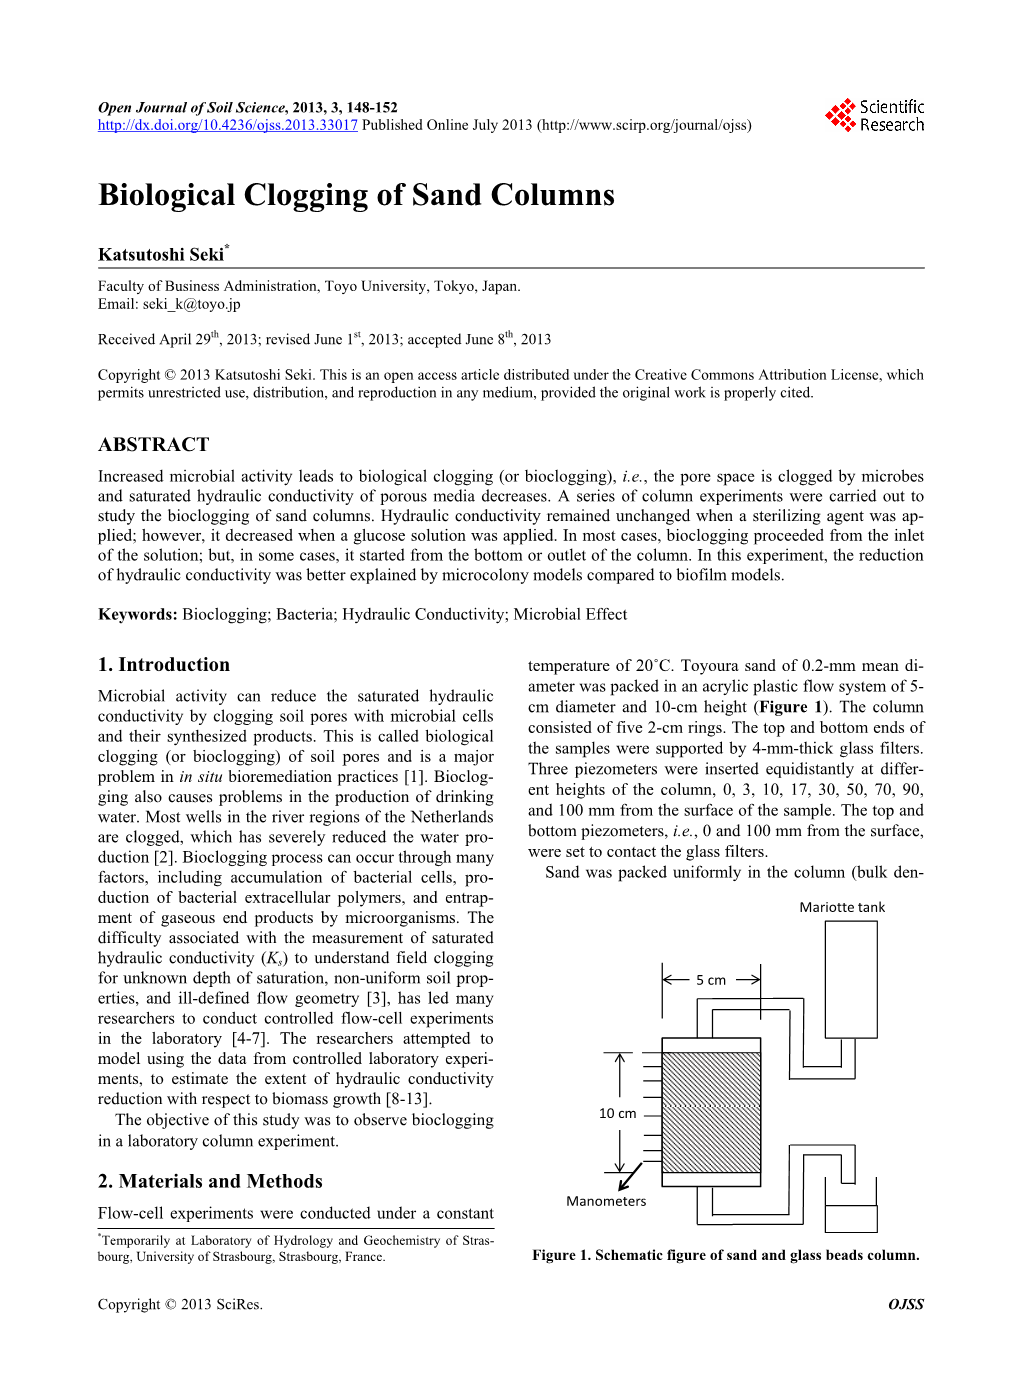 Biological Clogging of Sand Columns